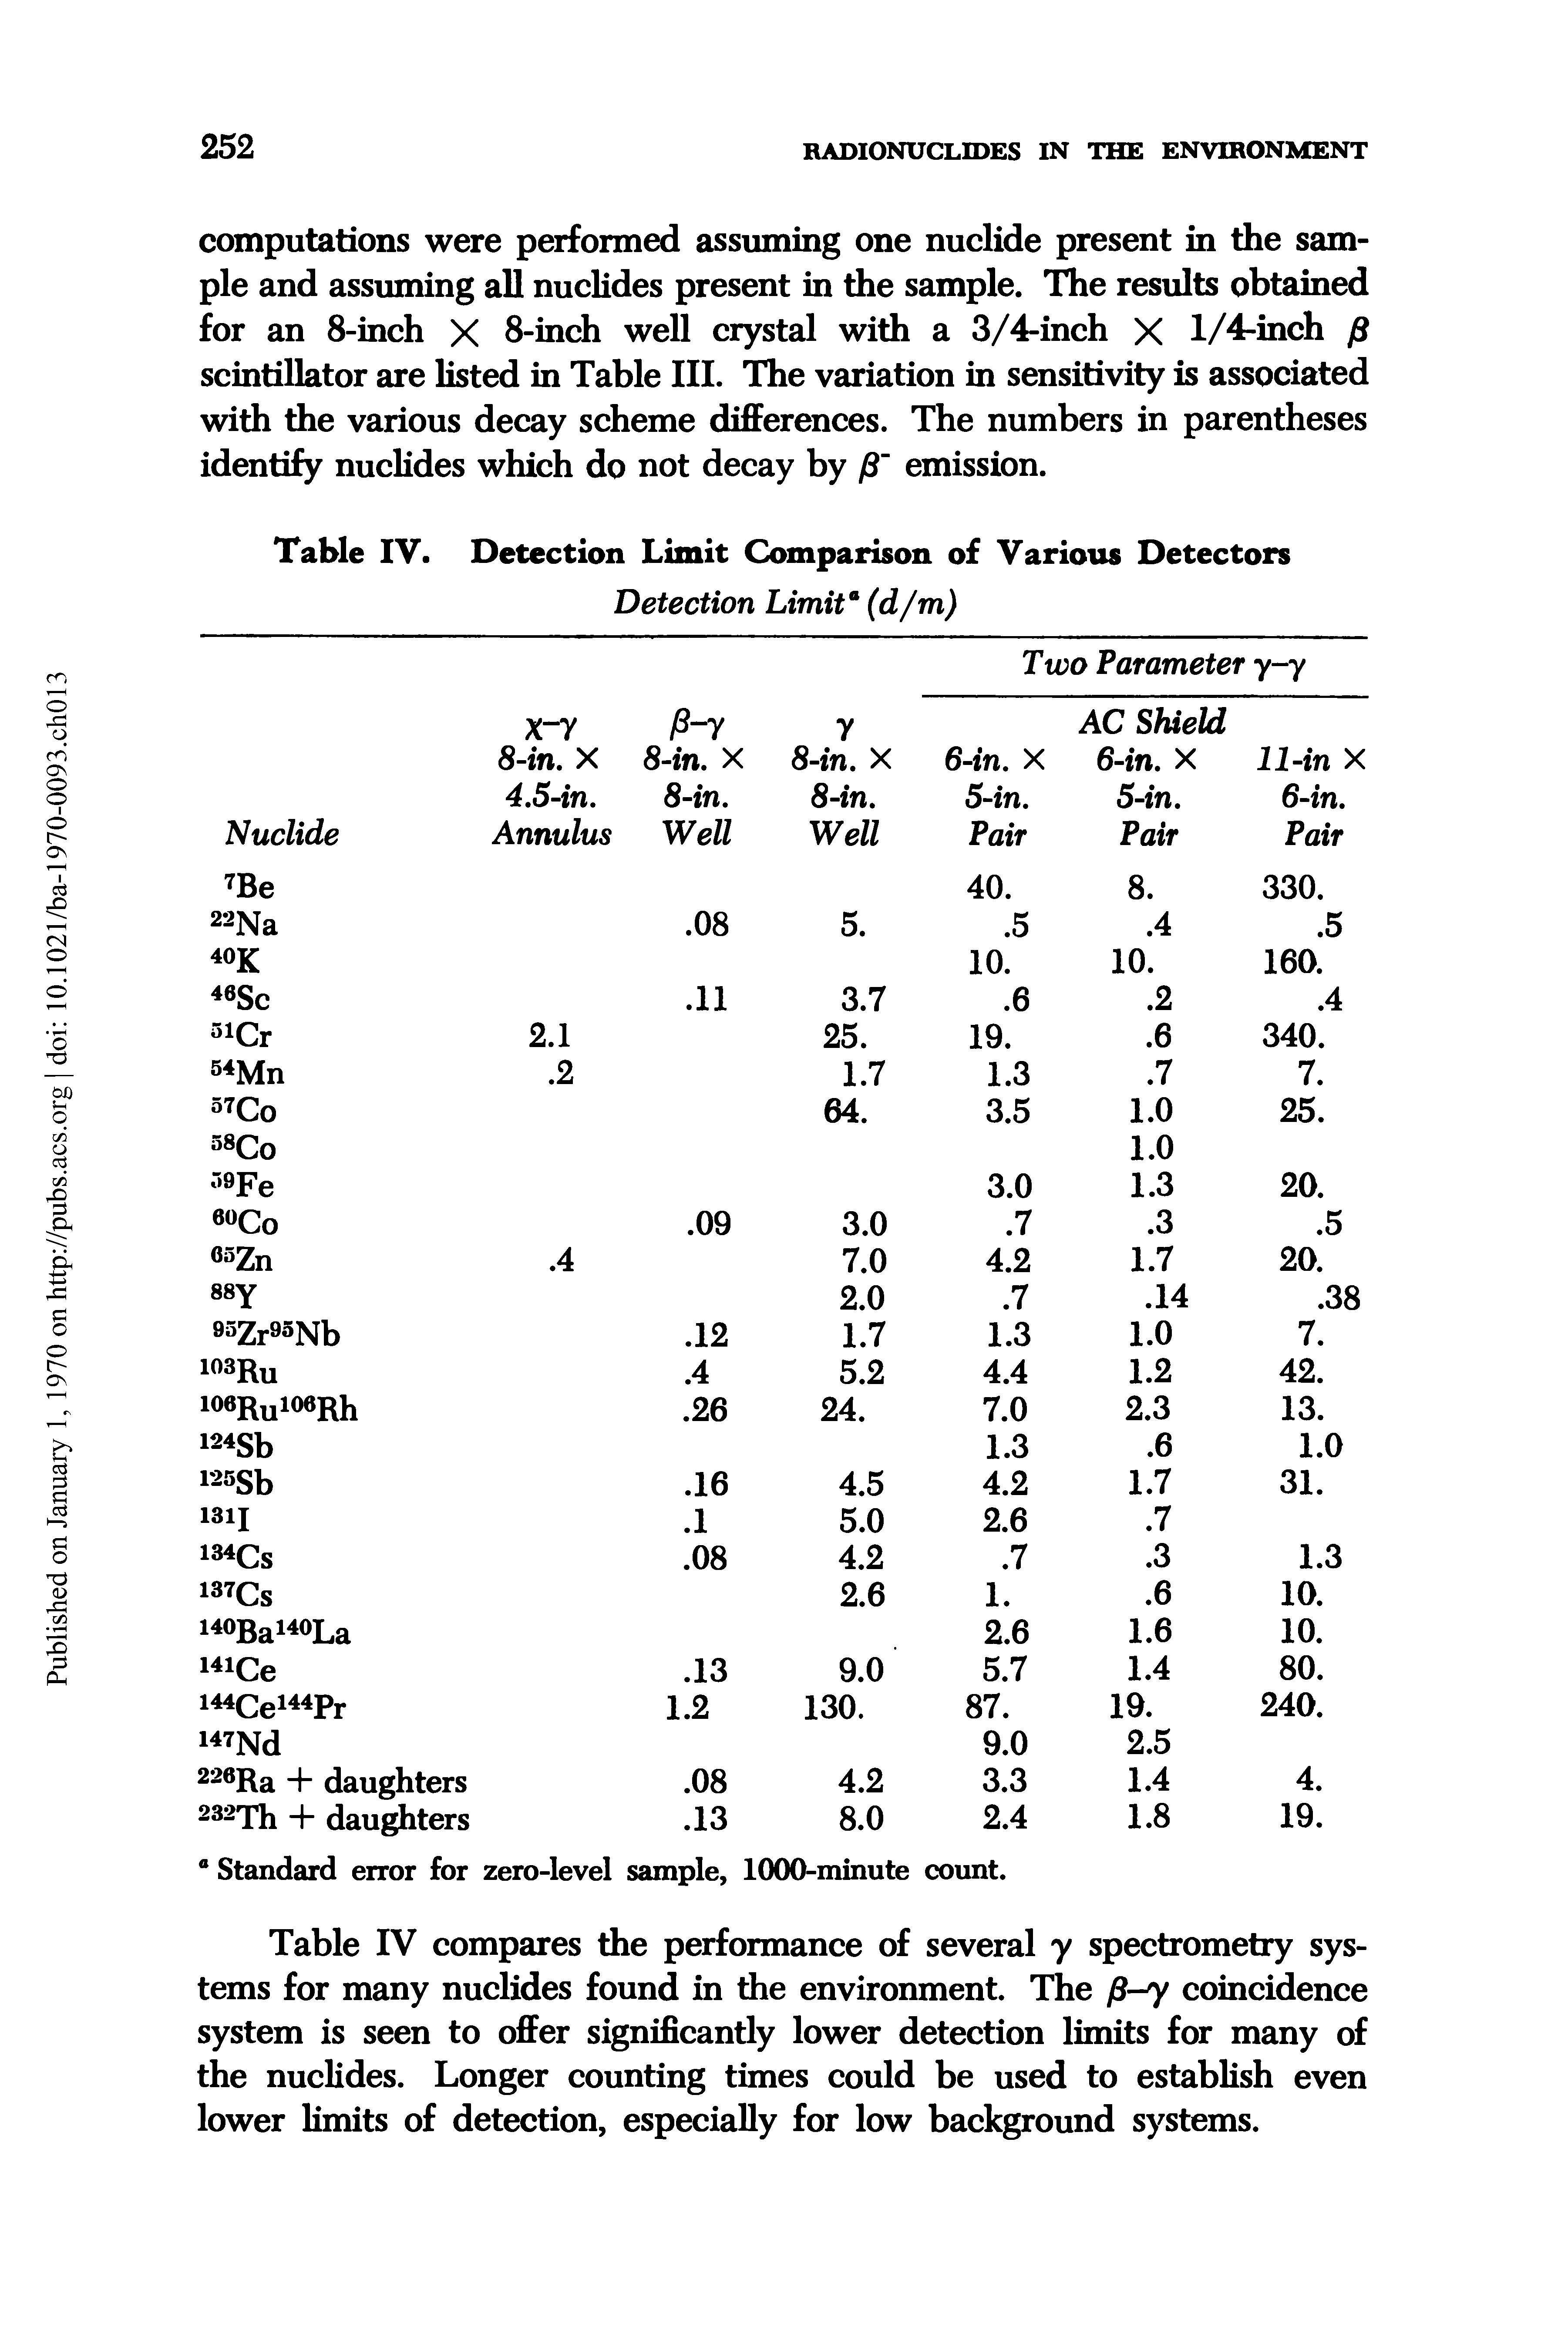 Table IV. Detection Limit Comparison of Various Detectors...